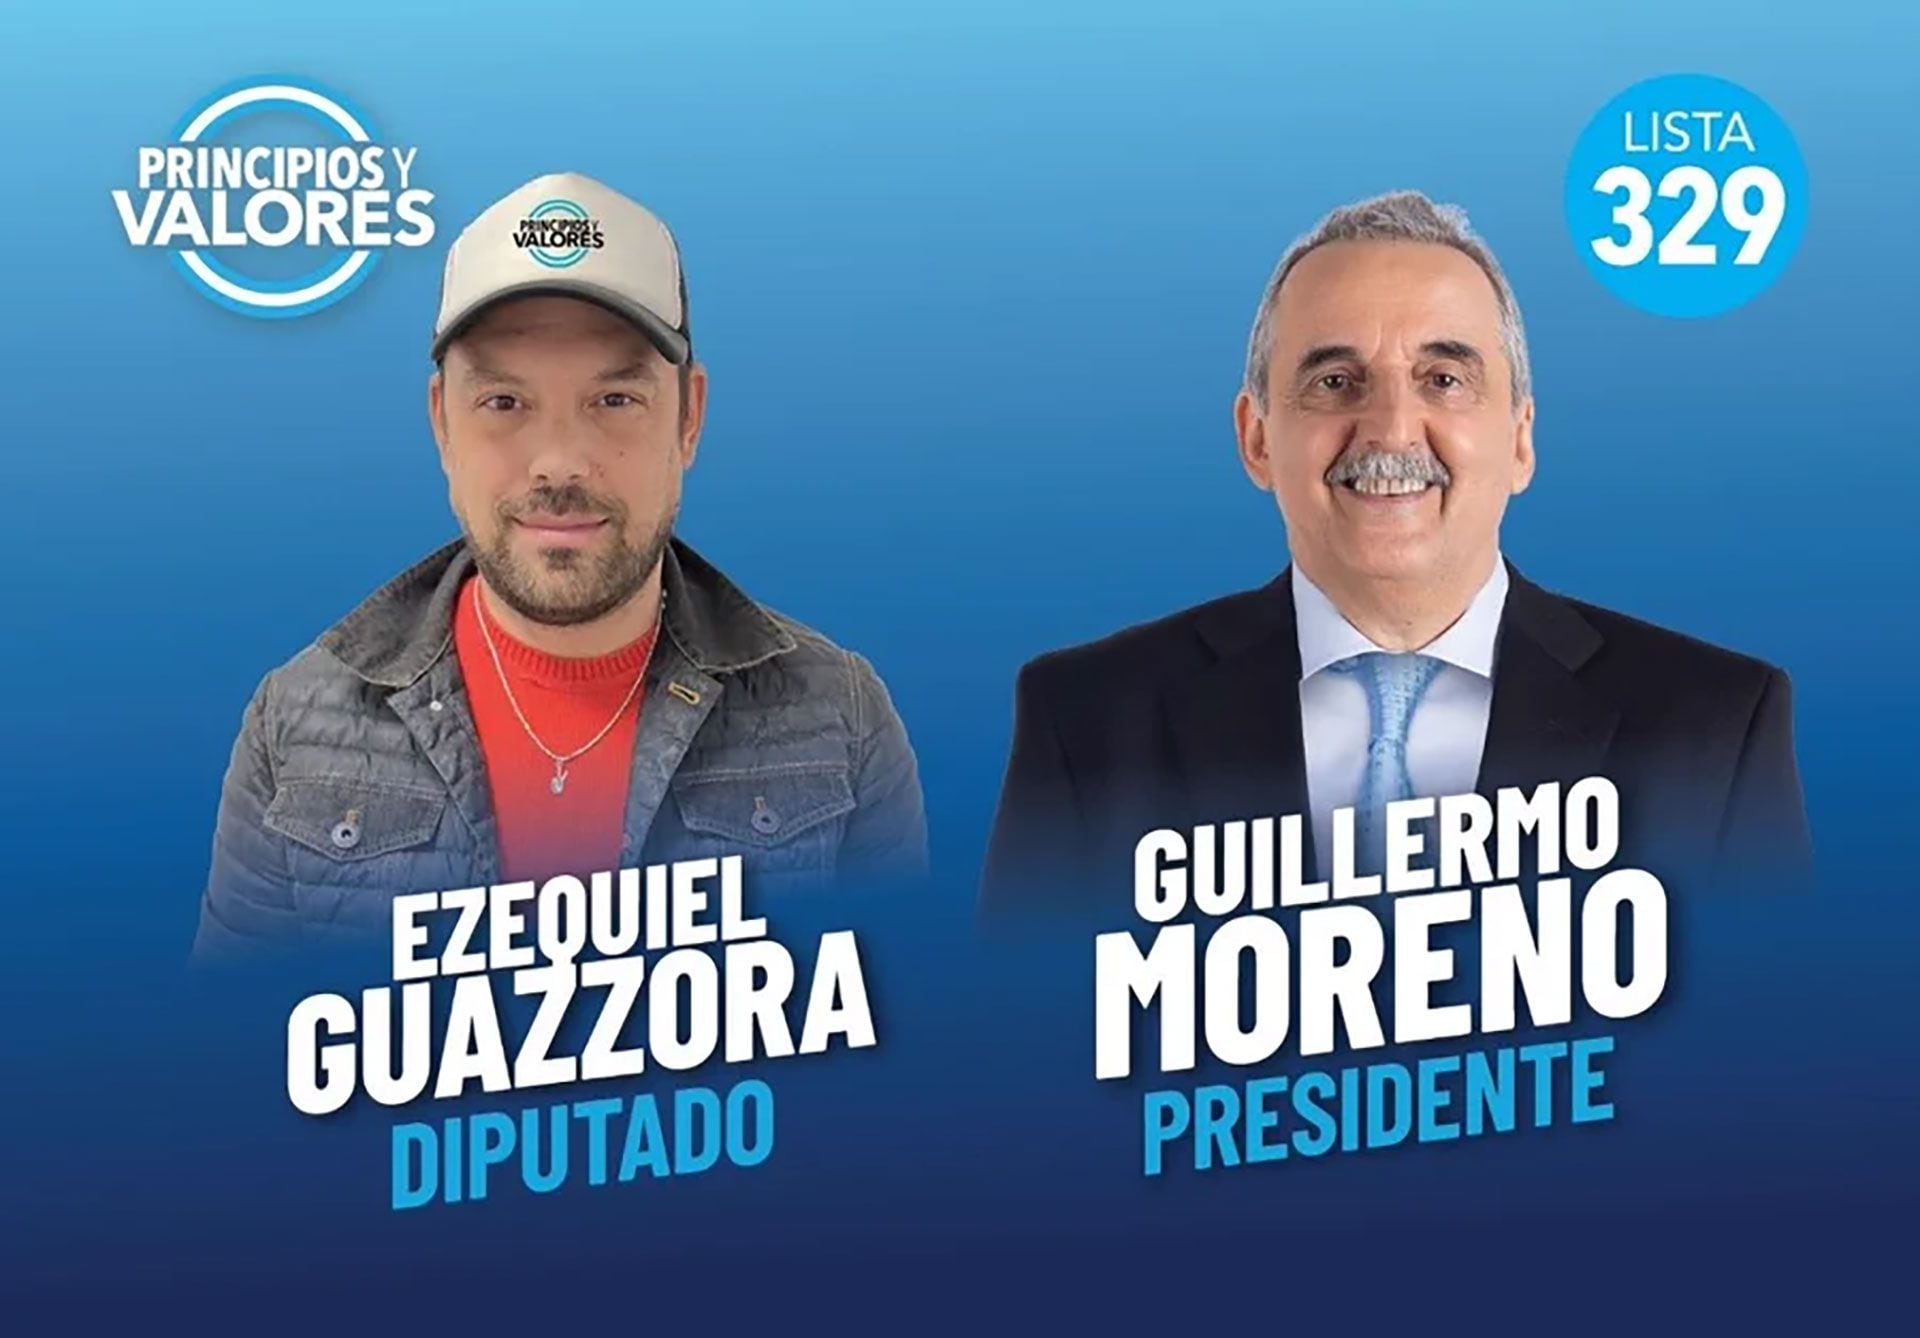 Ezequiel Guazzora se postul como pre candidato a diputado provincial en las PASO